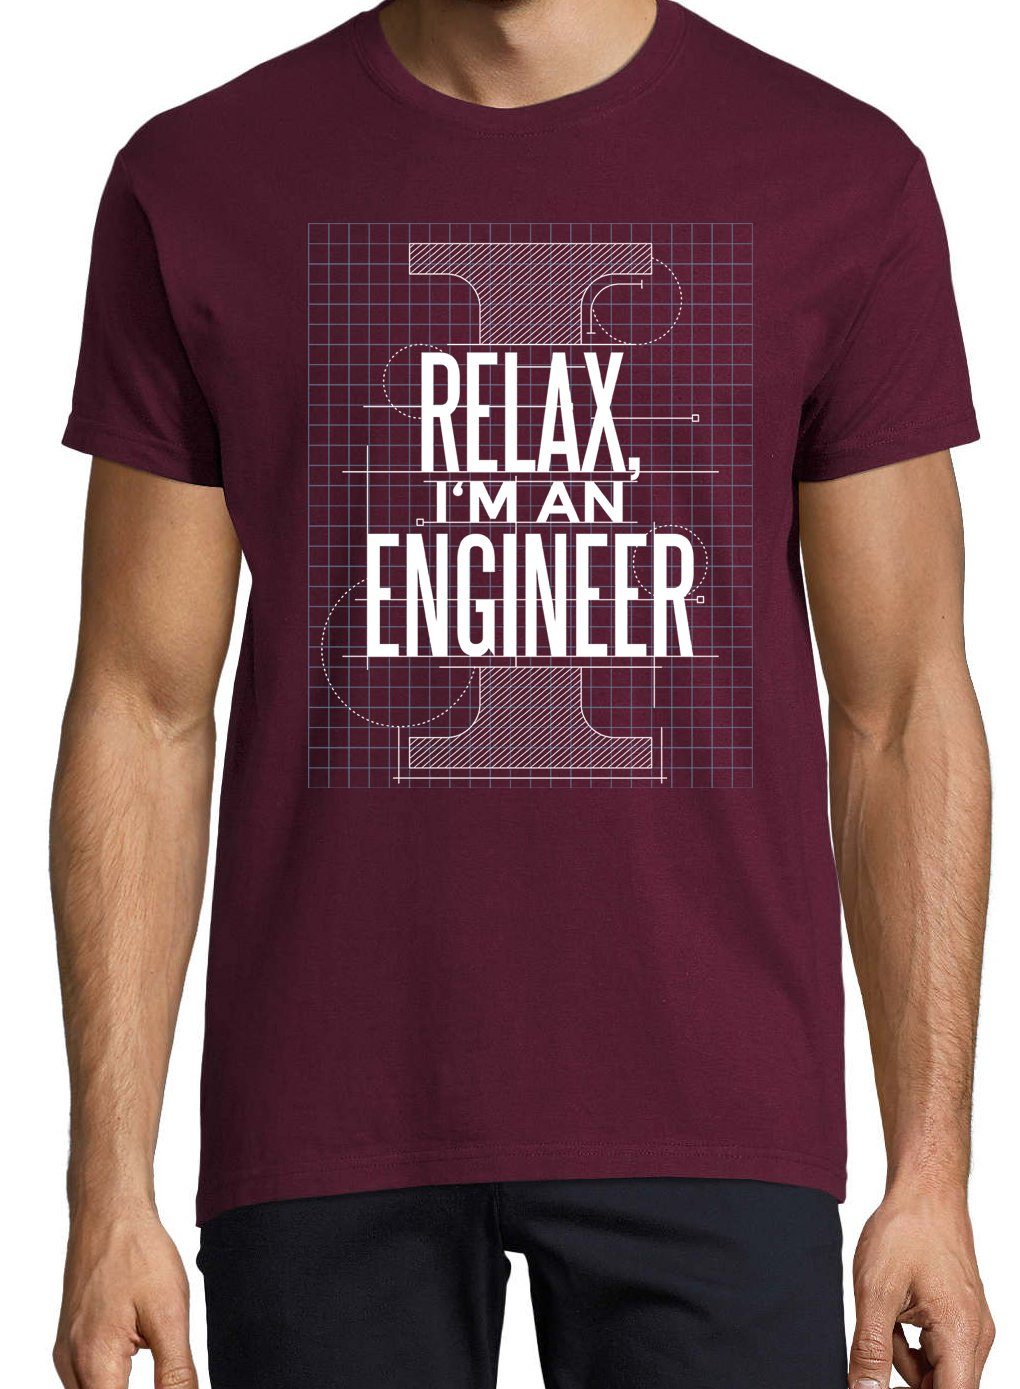 Am trendigem Youth Frontprint Engineer" Herren Designz "Relax, A T-Shirt Shirt I mit Burgund